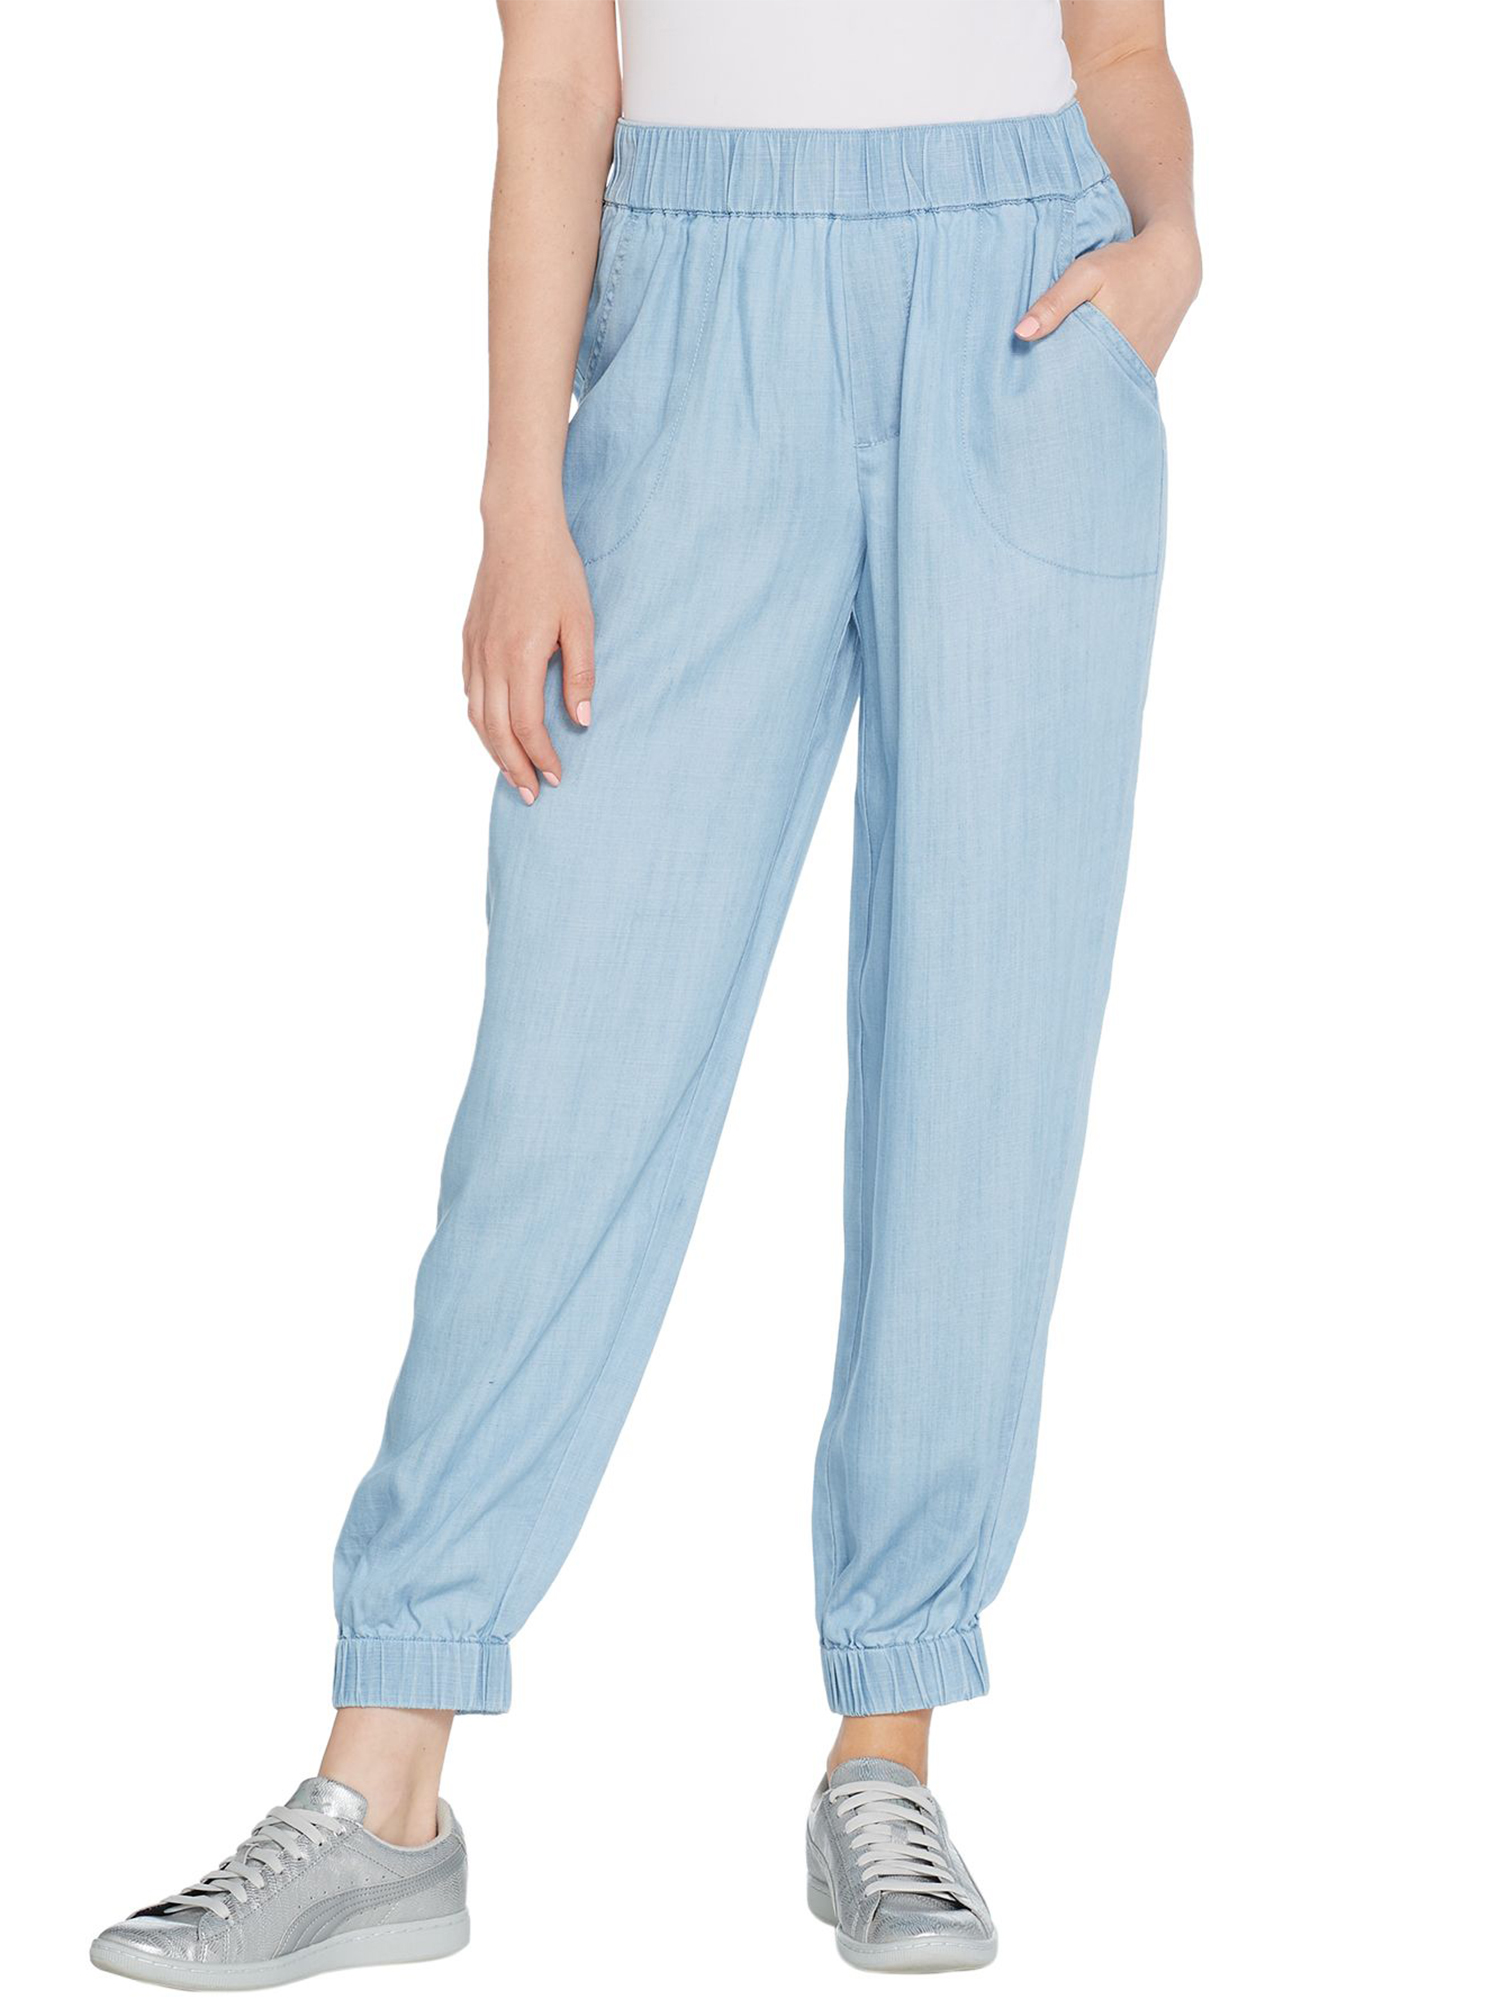 LISA RINNA Size 6 Lyocell Jogger Pants DARK WASH – NYC Moda Boutique